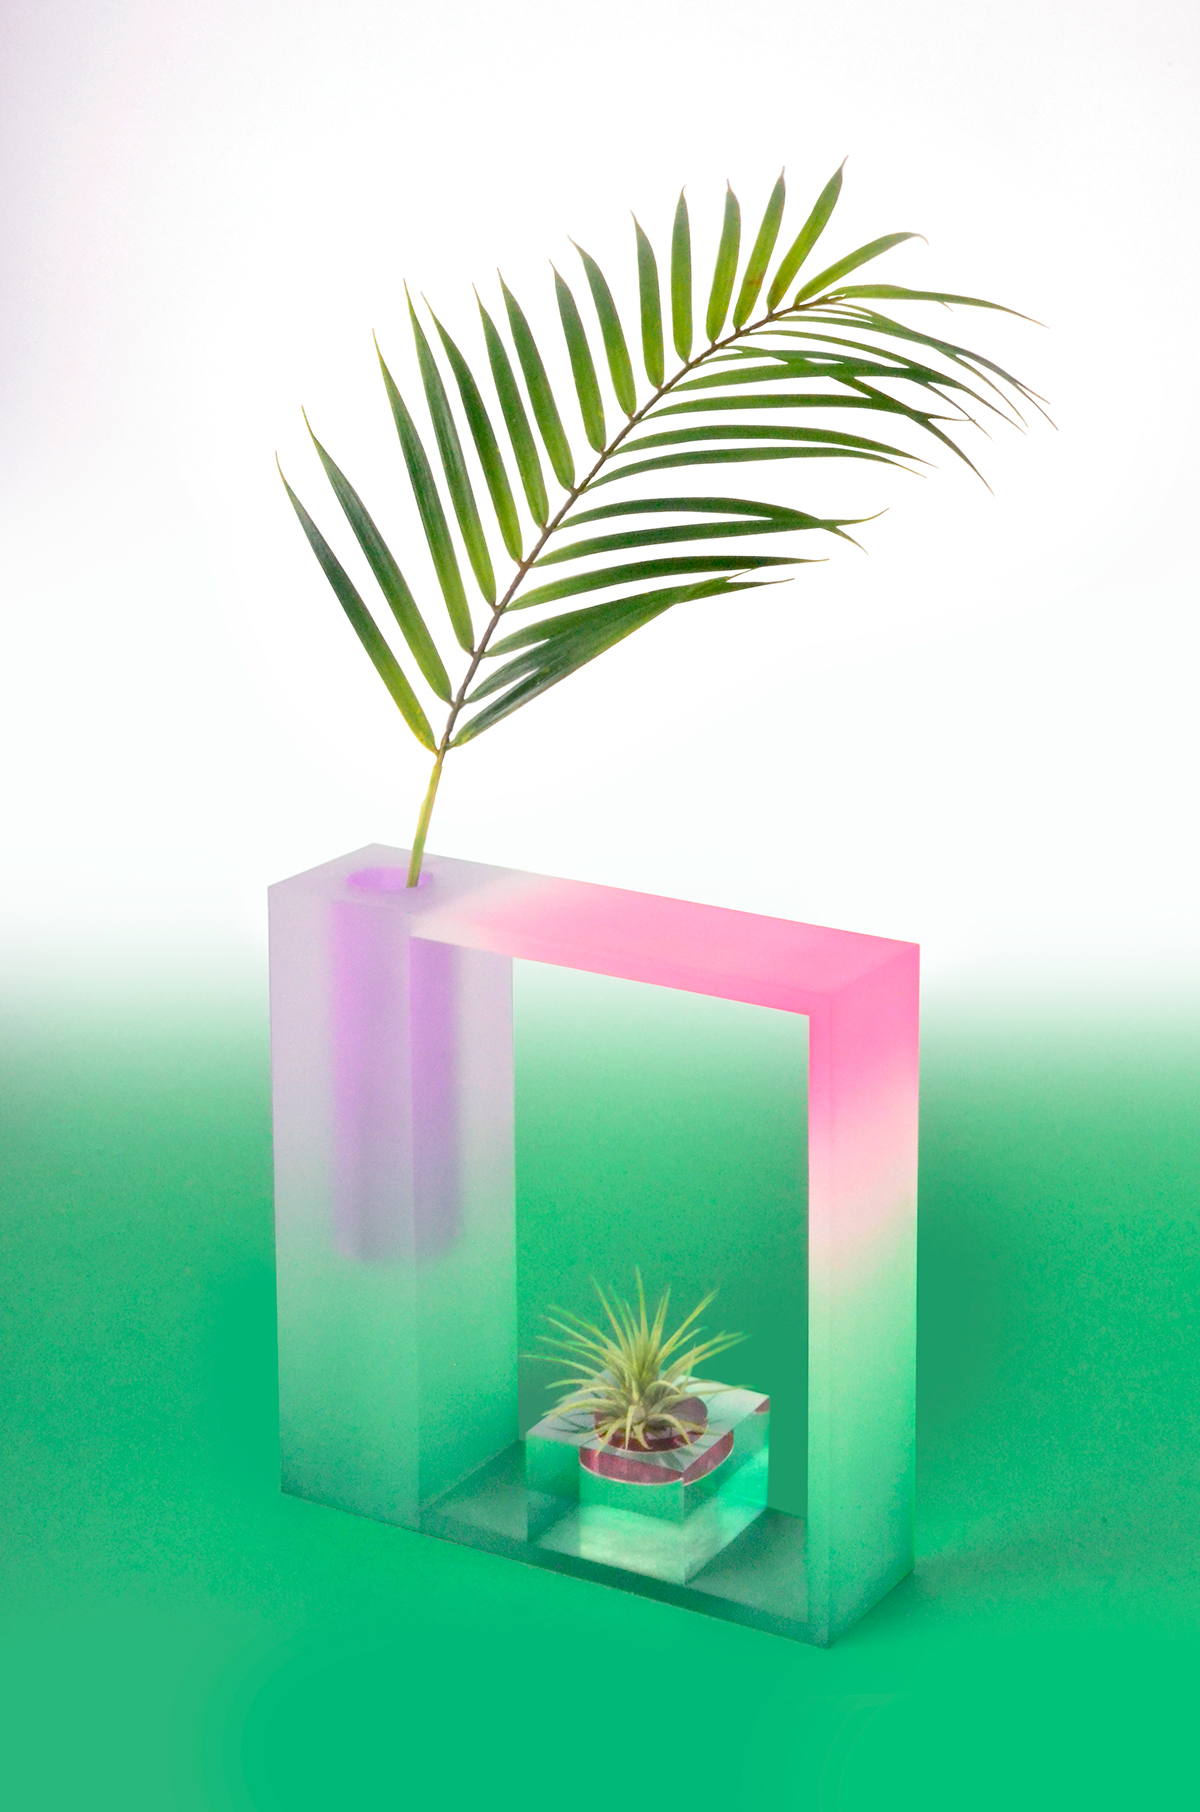 vase design Vase acrylic colorful product minimal design